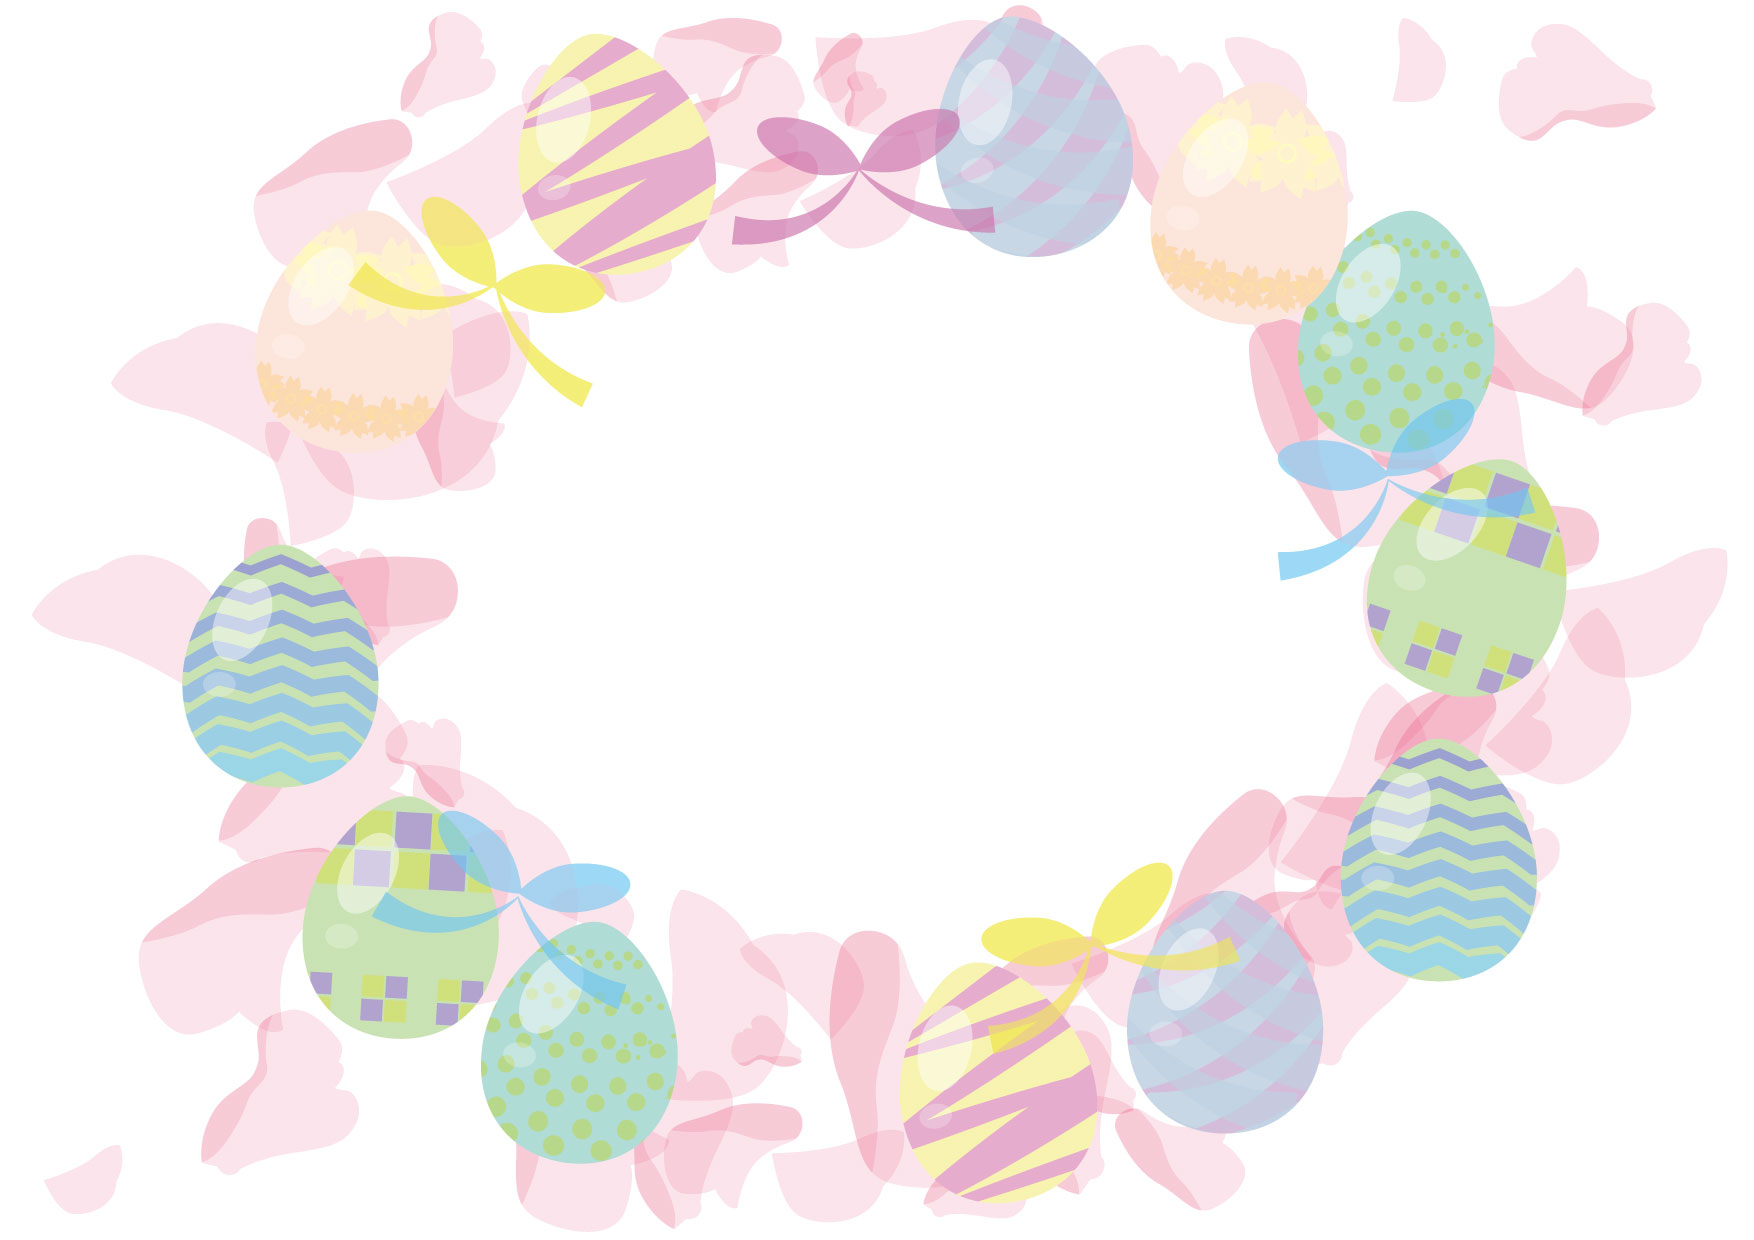 可愛いイラスト無料 イースターエッグ リース ピンク Free Illustration Easter Egg Wreath Pink 公式 イラスト素材サイト イラストダウンロード